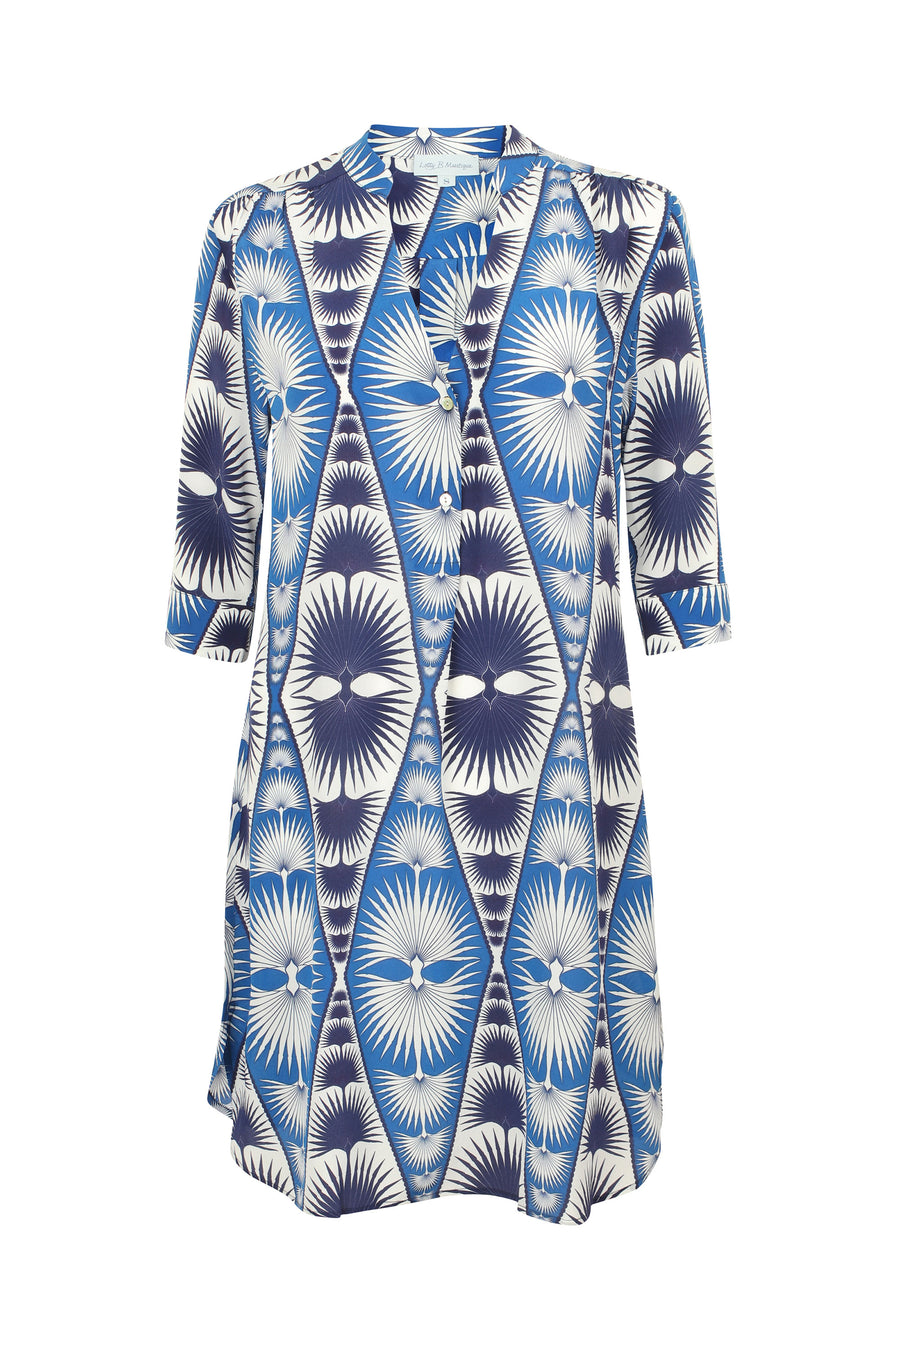 Silk Crepe Decima dress by Lotty B in blue Fan Palm repeat print. Mustique Designer Resort Wear